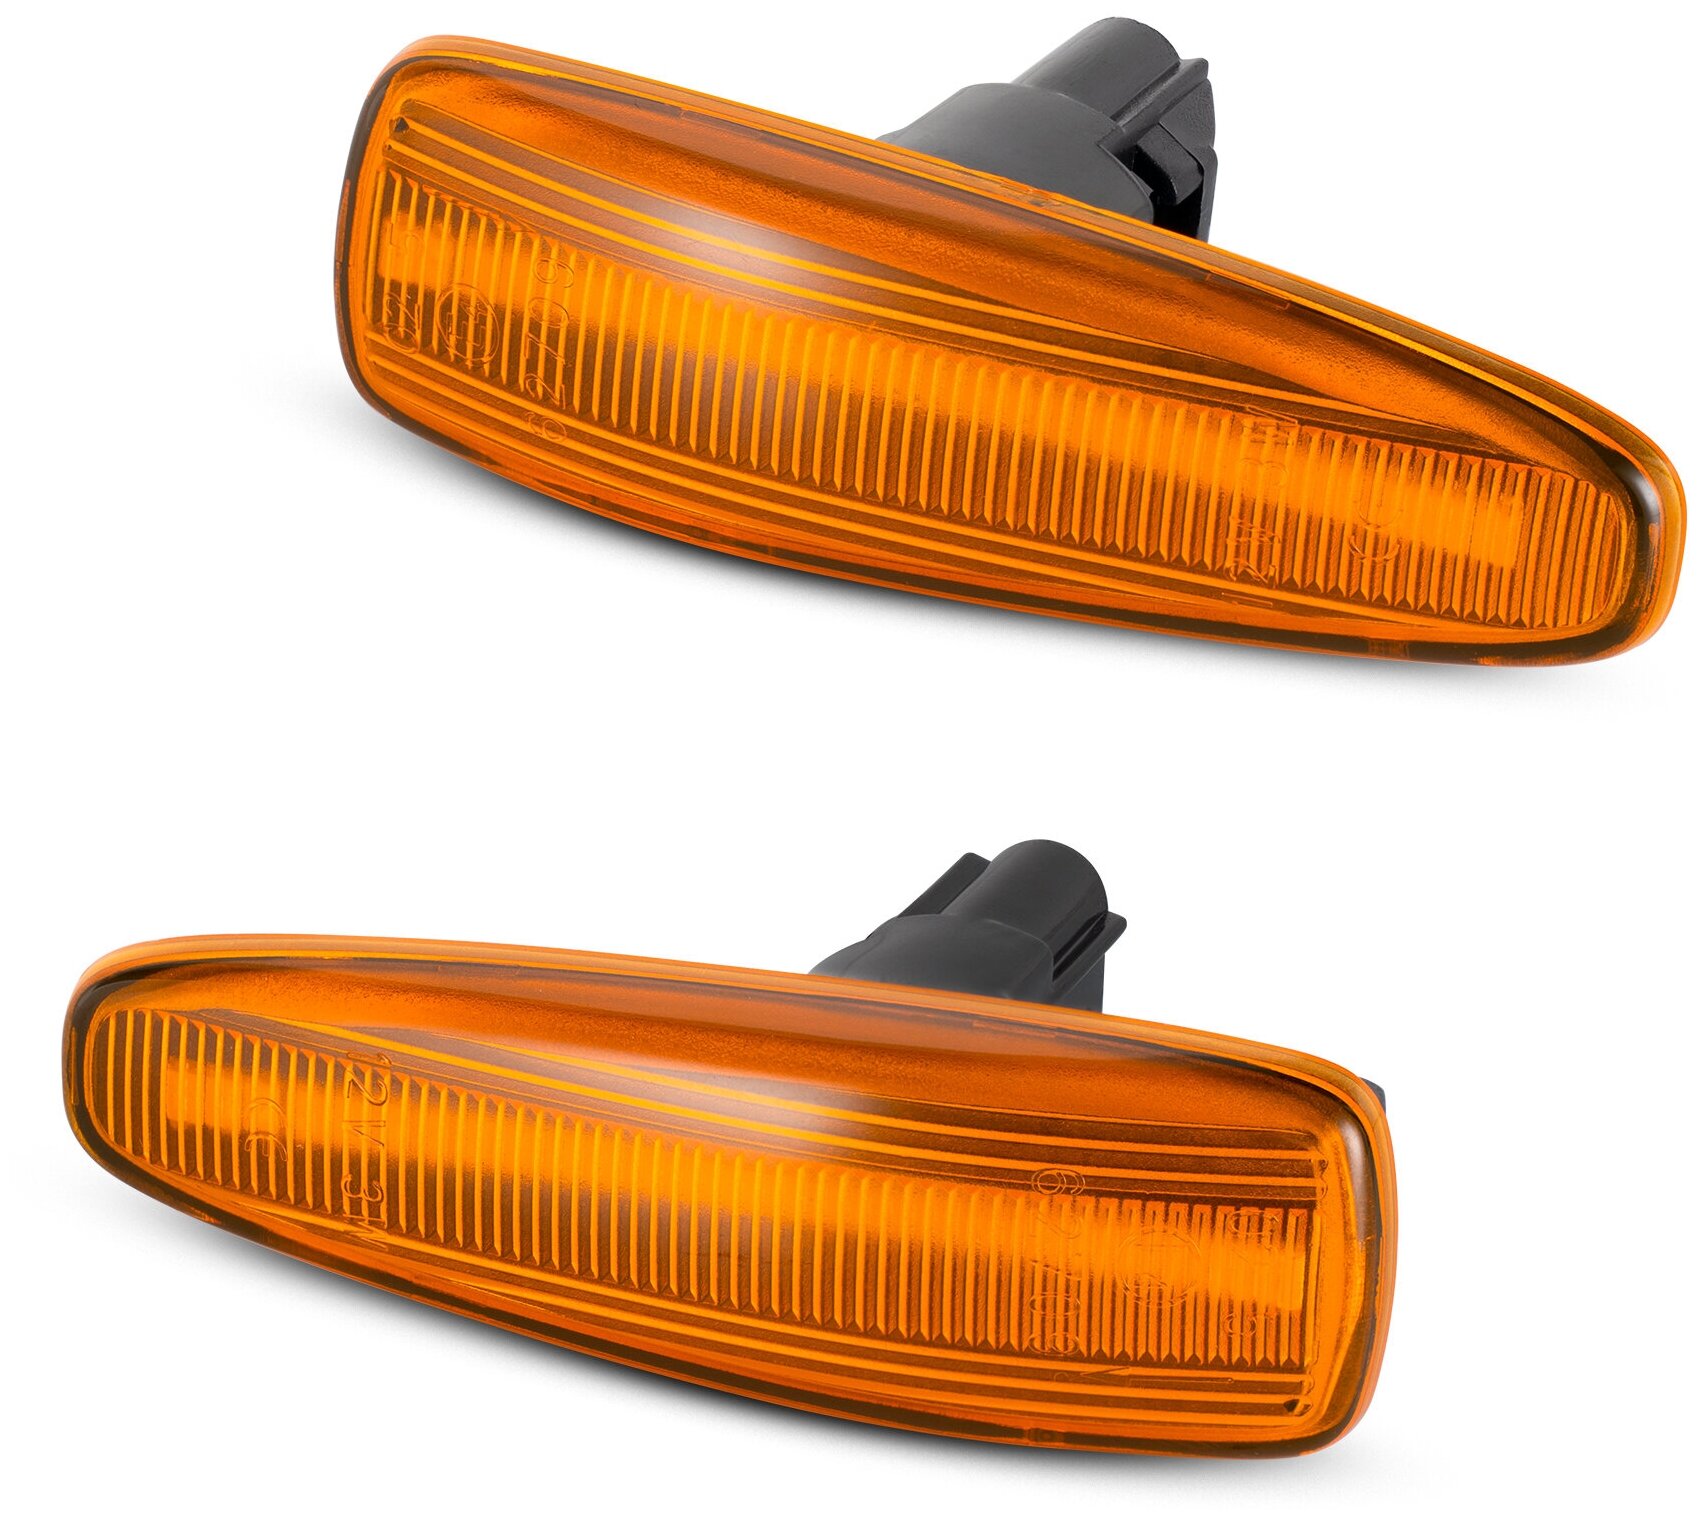 Повторители поворота LED для Mitsubishi Lancer, Outlander, Pajero, Montero динамические оранжевые 2шт